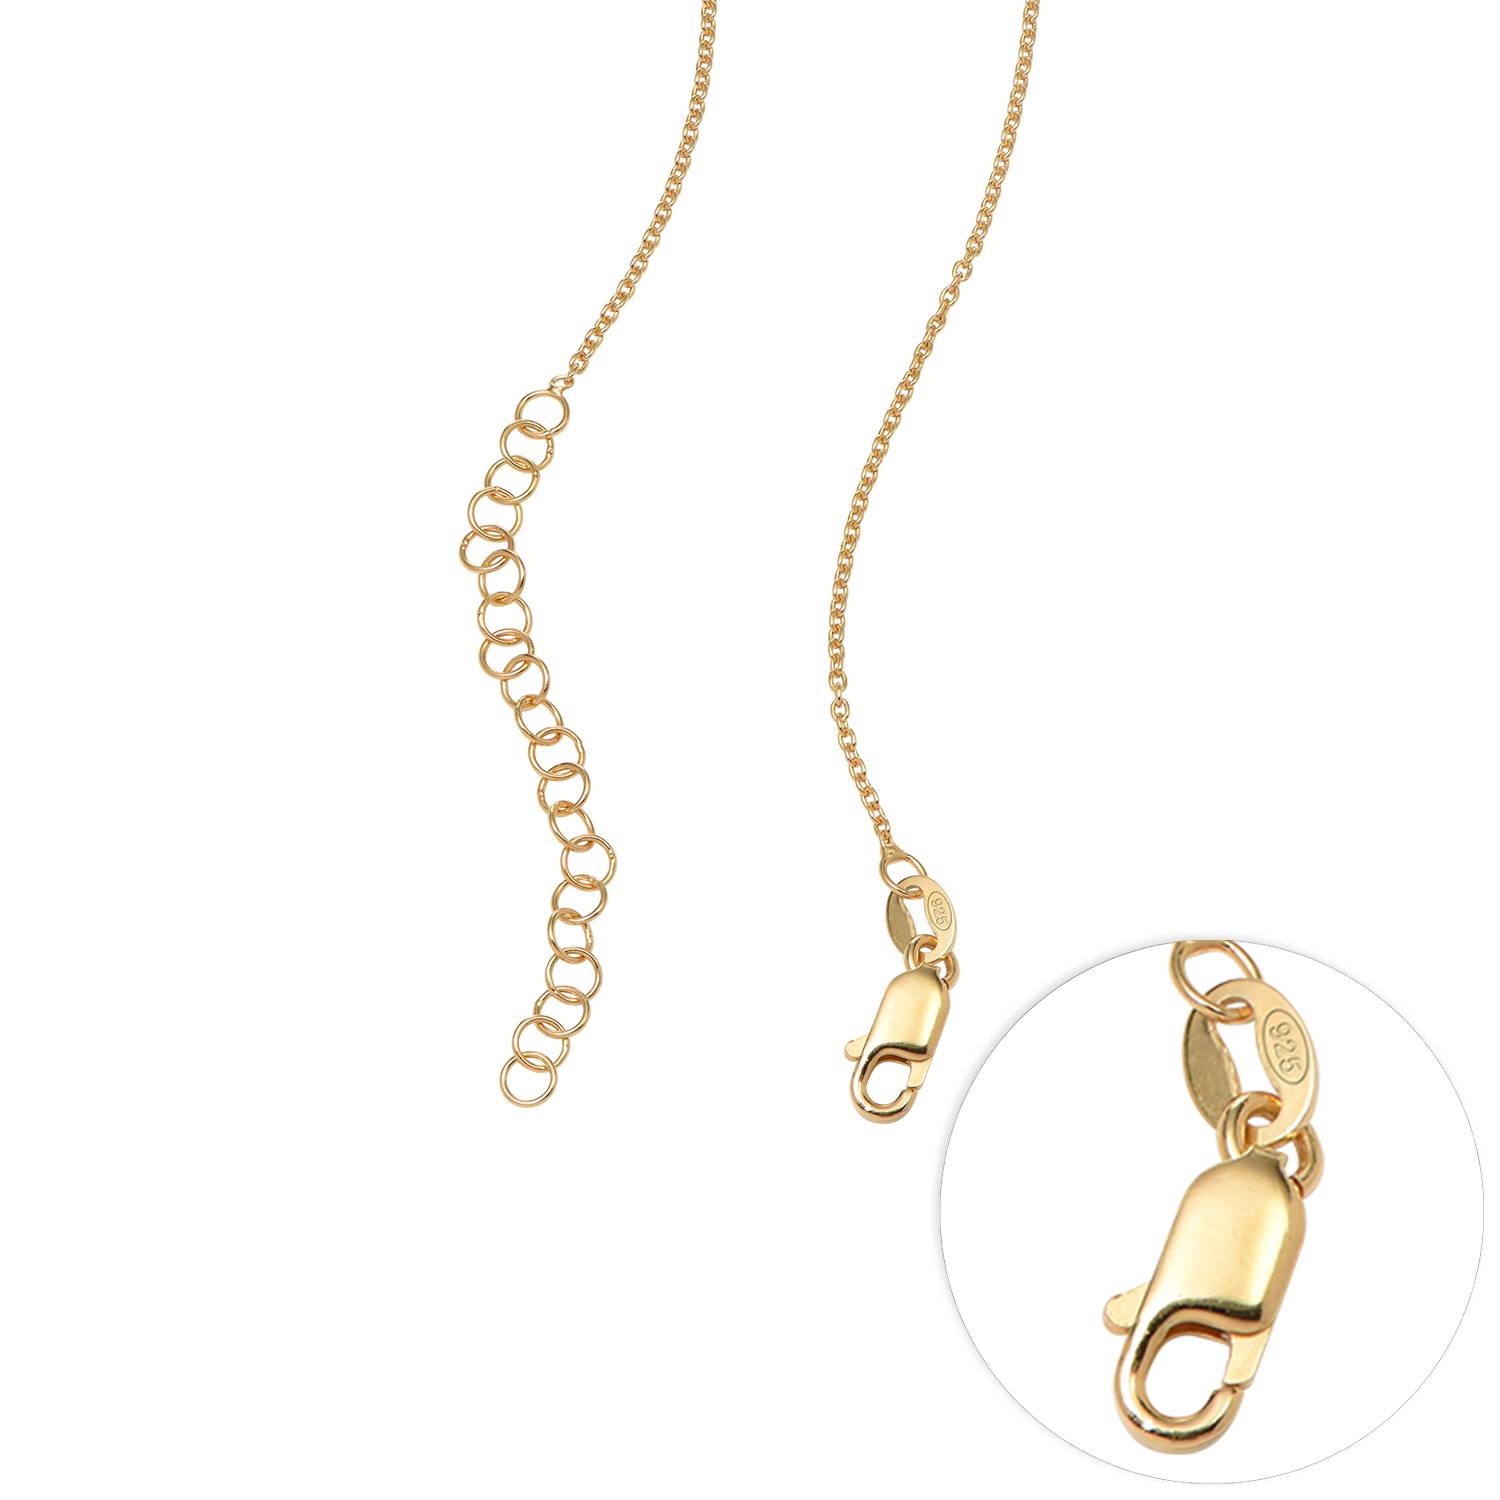 Floret Photo Pendant Necklace in 18ct Gold Vermeil-5 product photo